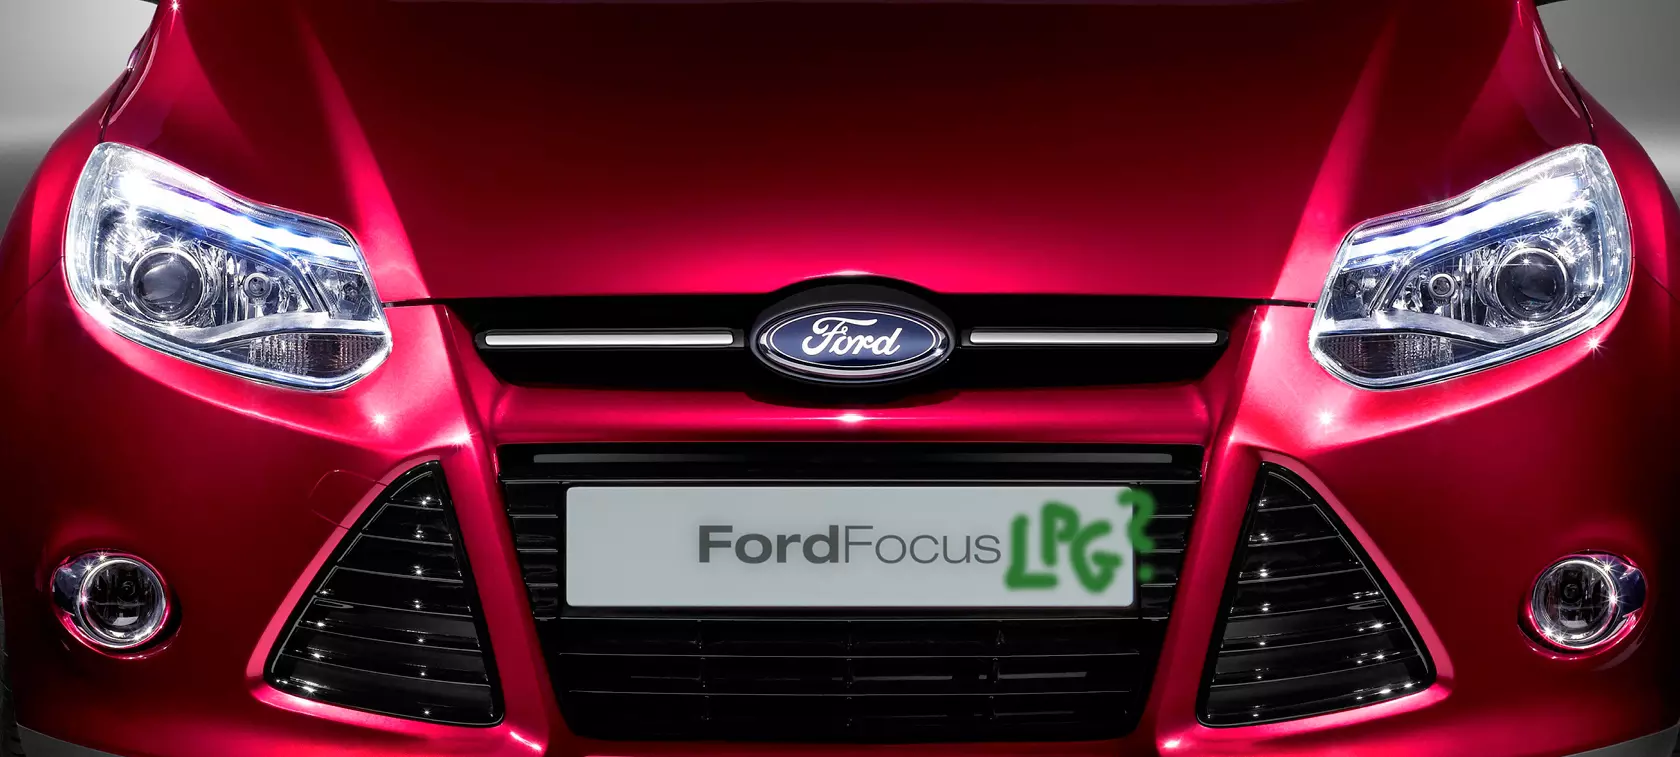 Ford - równoległe światy alternatywne